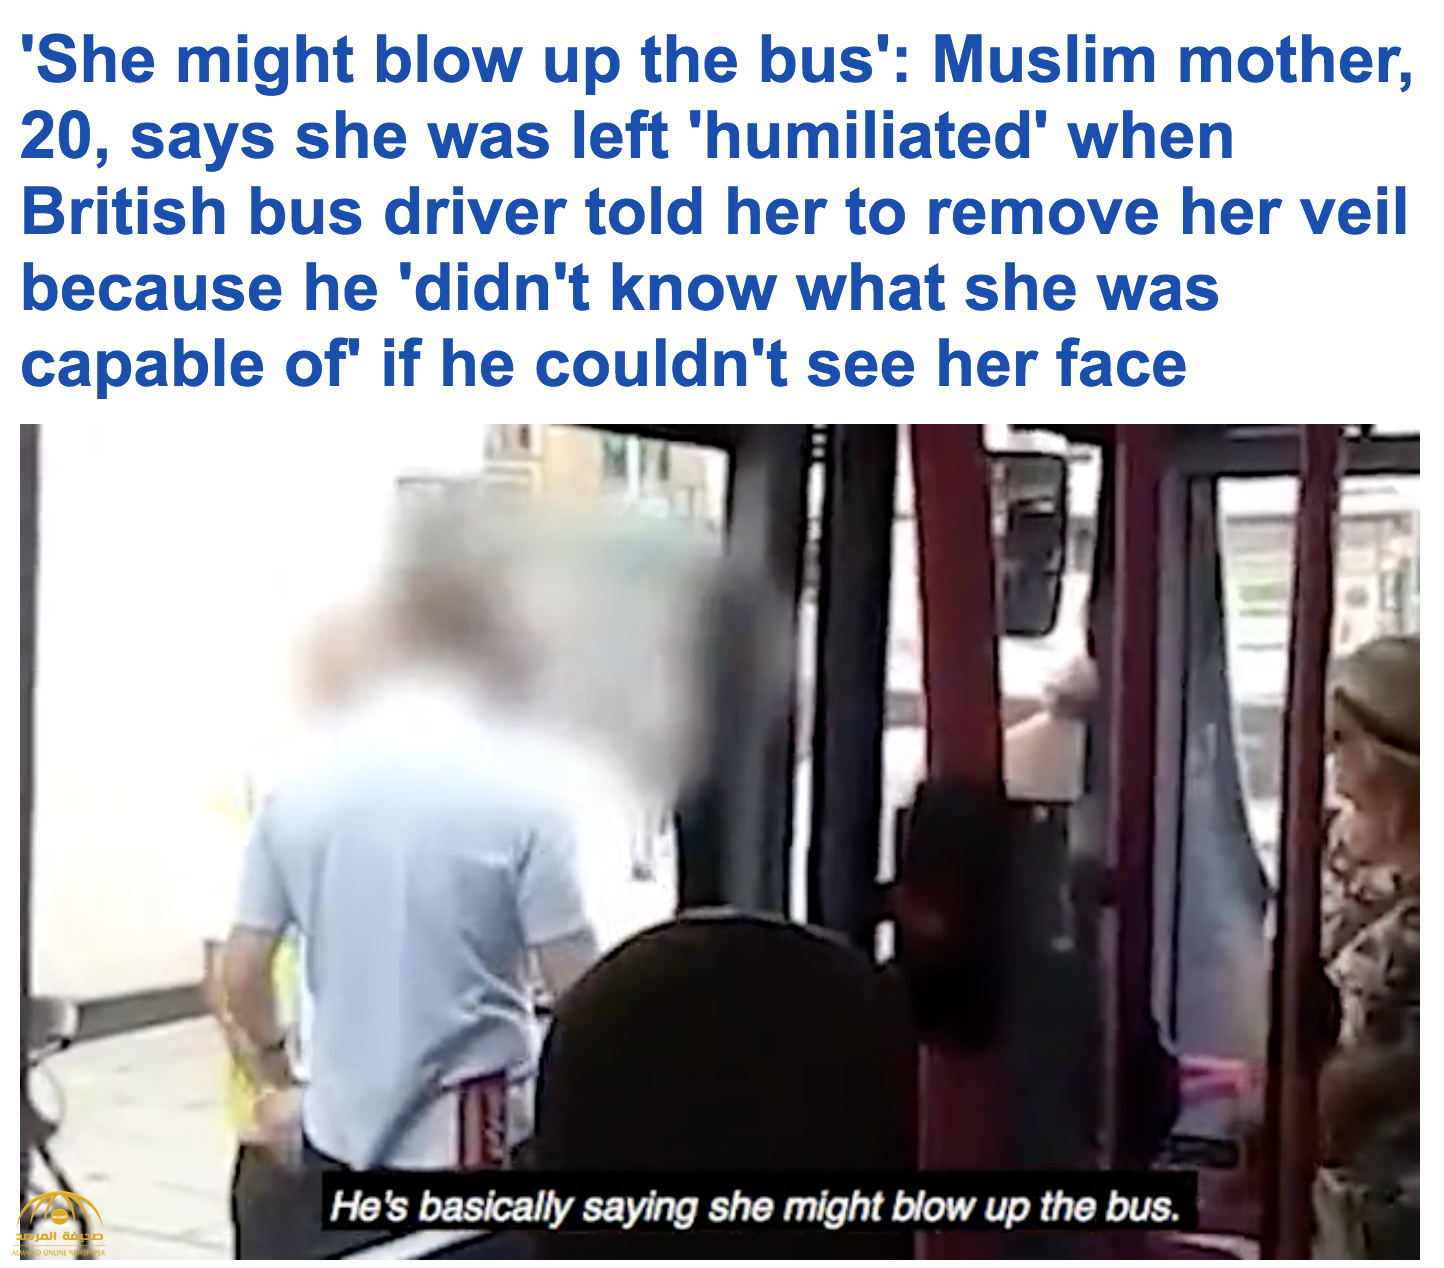 بالفيديو:  سائق حافلة في بريطانيا يطالب فتاة مسلمة بإزالة النقاب عن وجهها خوفا على سلامة الركاب!